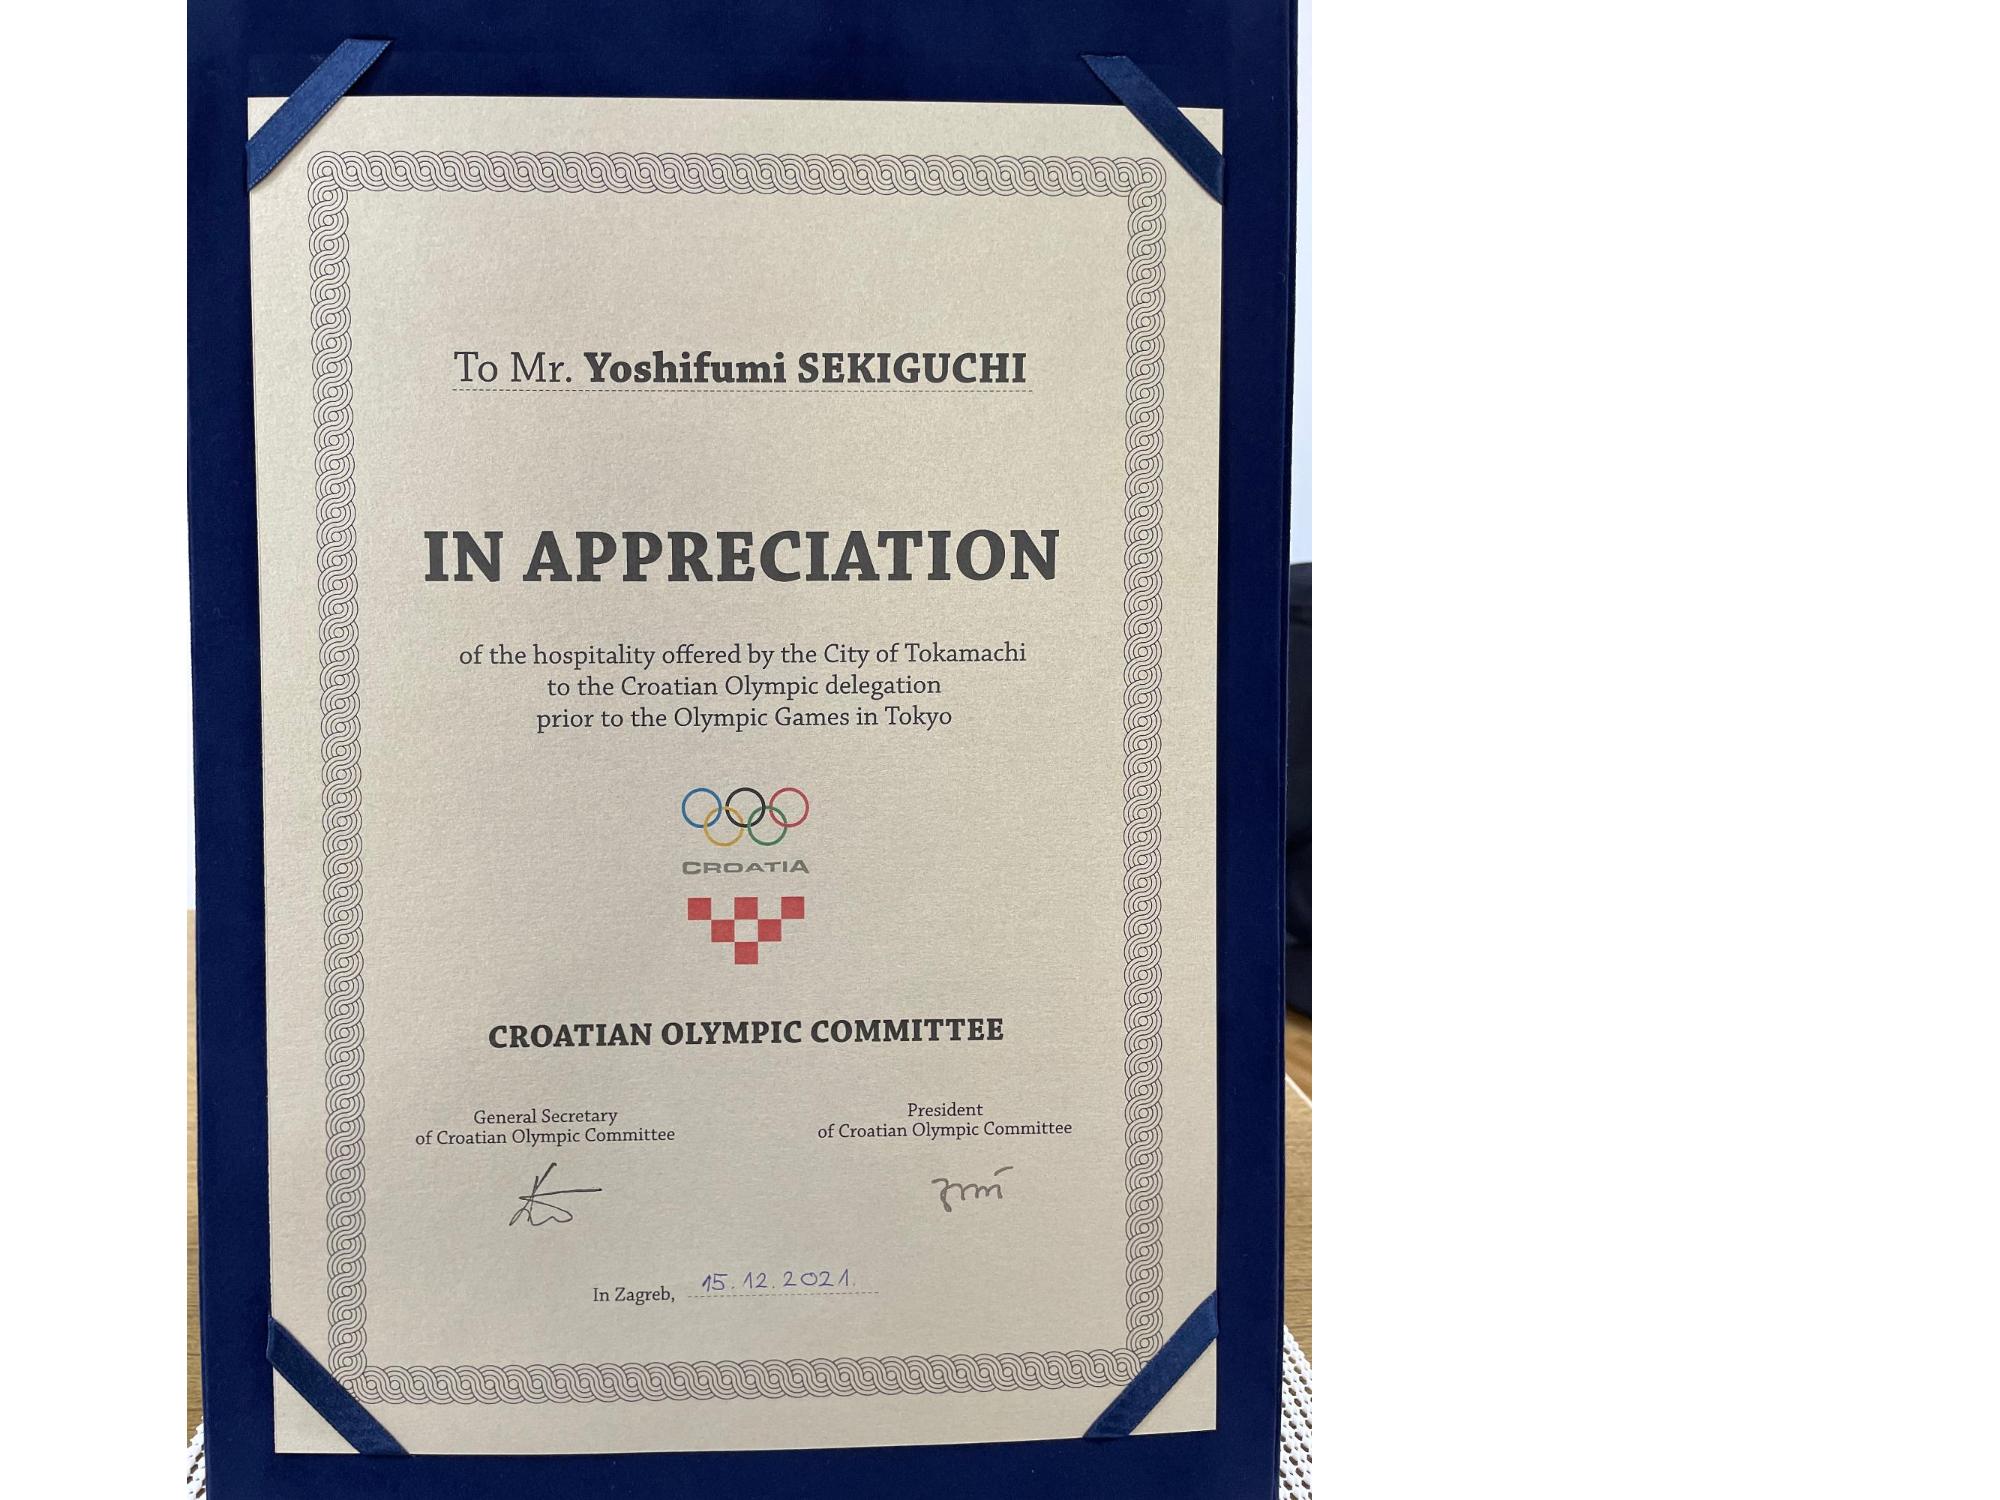 クロアチア共和国オリンピック委員会からの感謝状